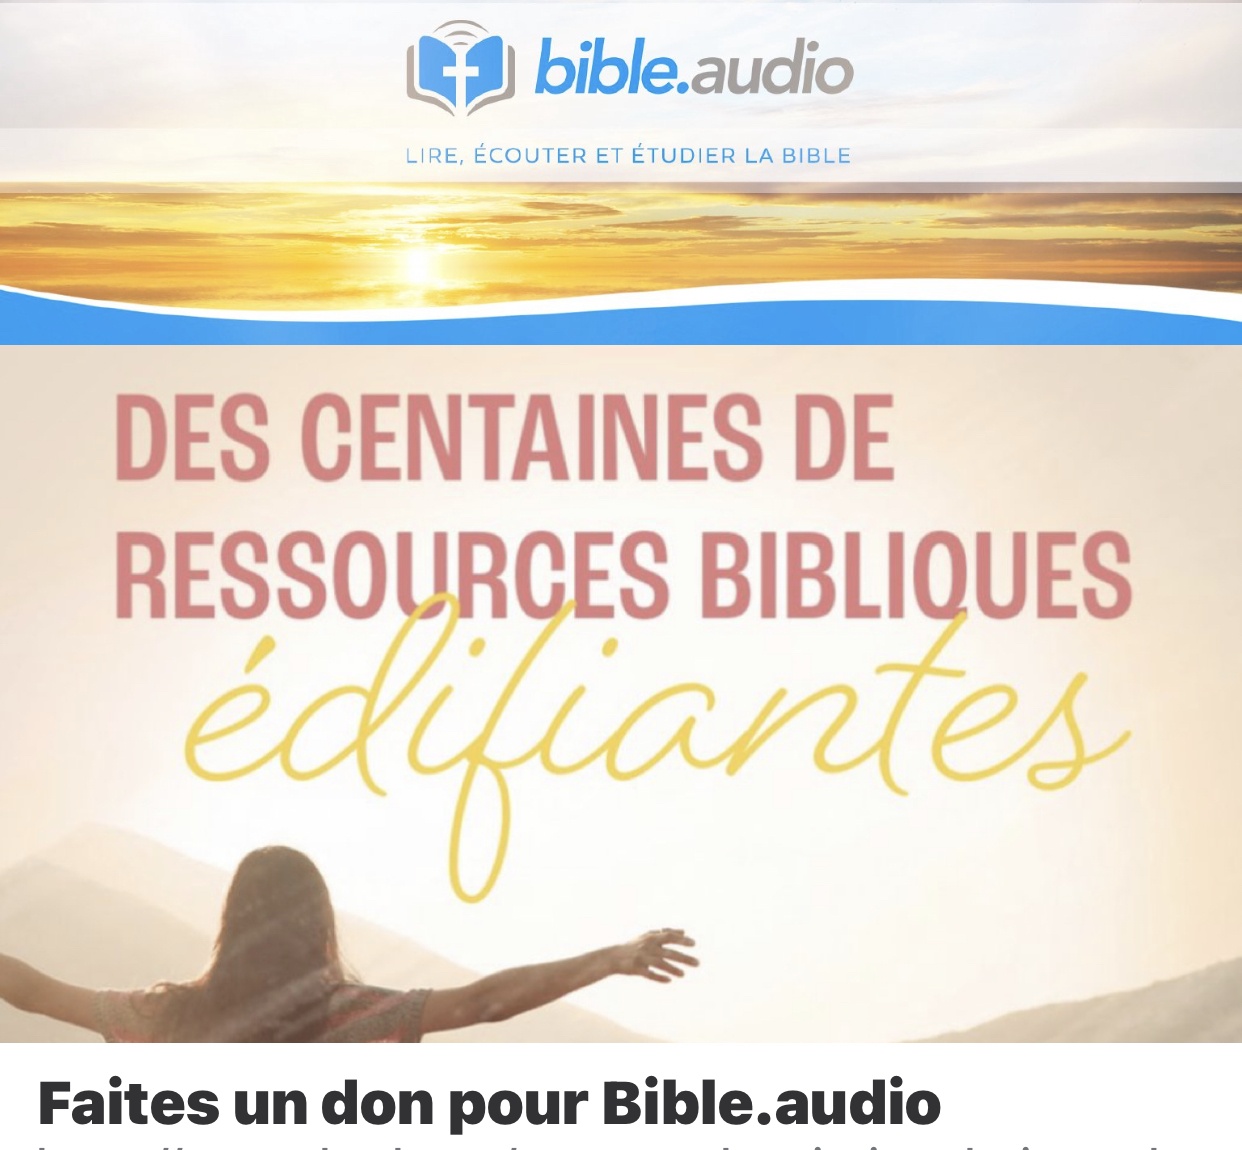 Soutenez bible.audio